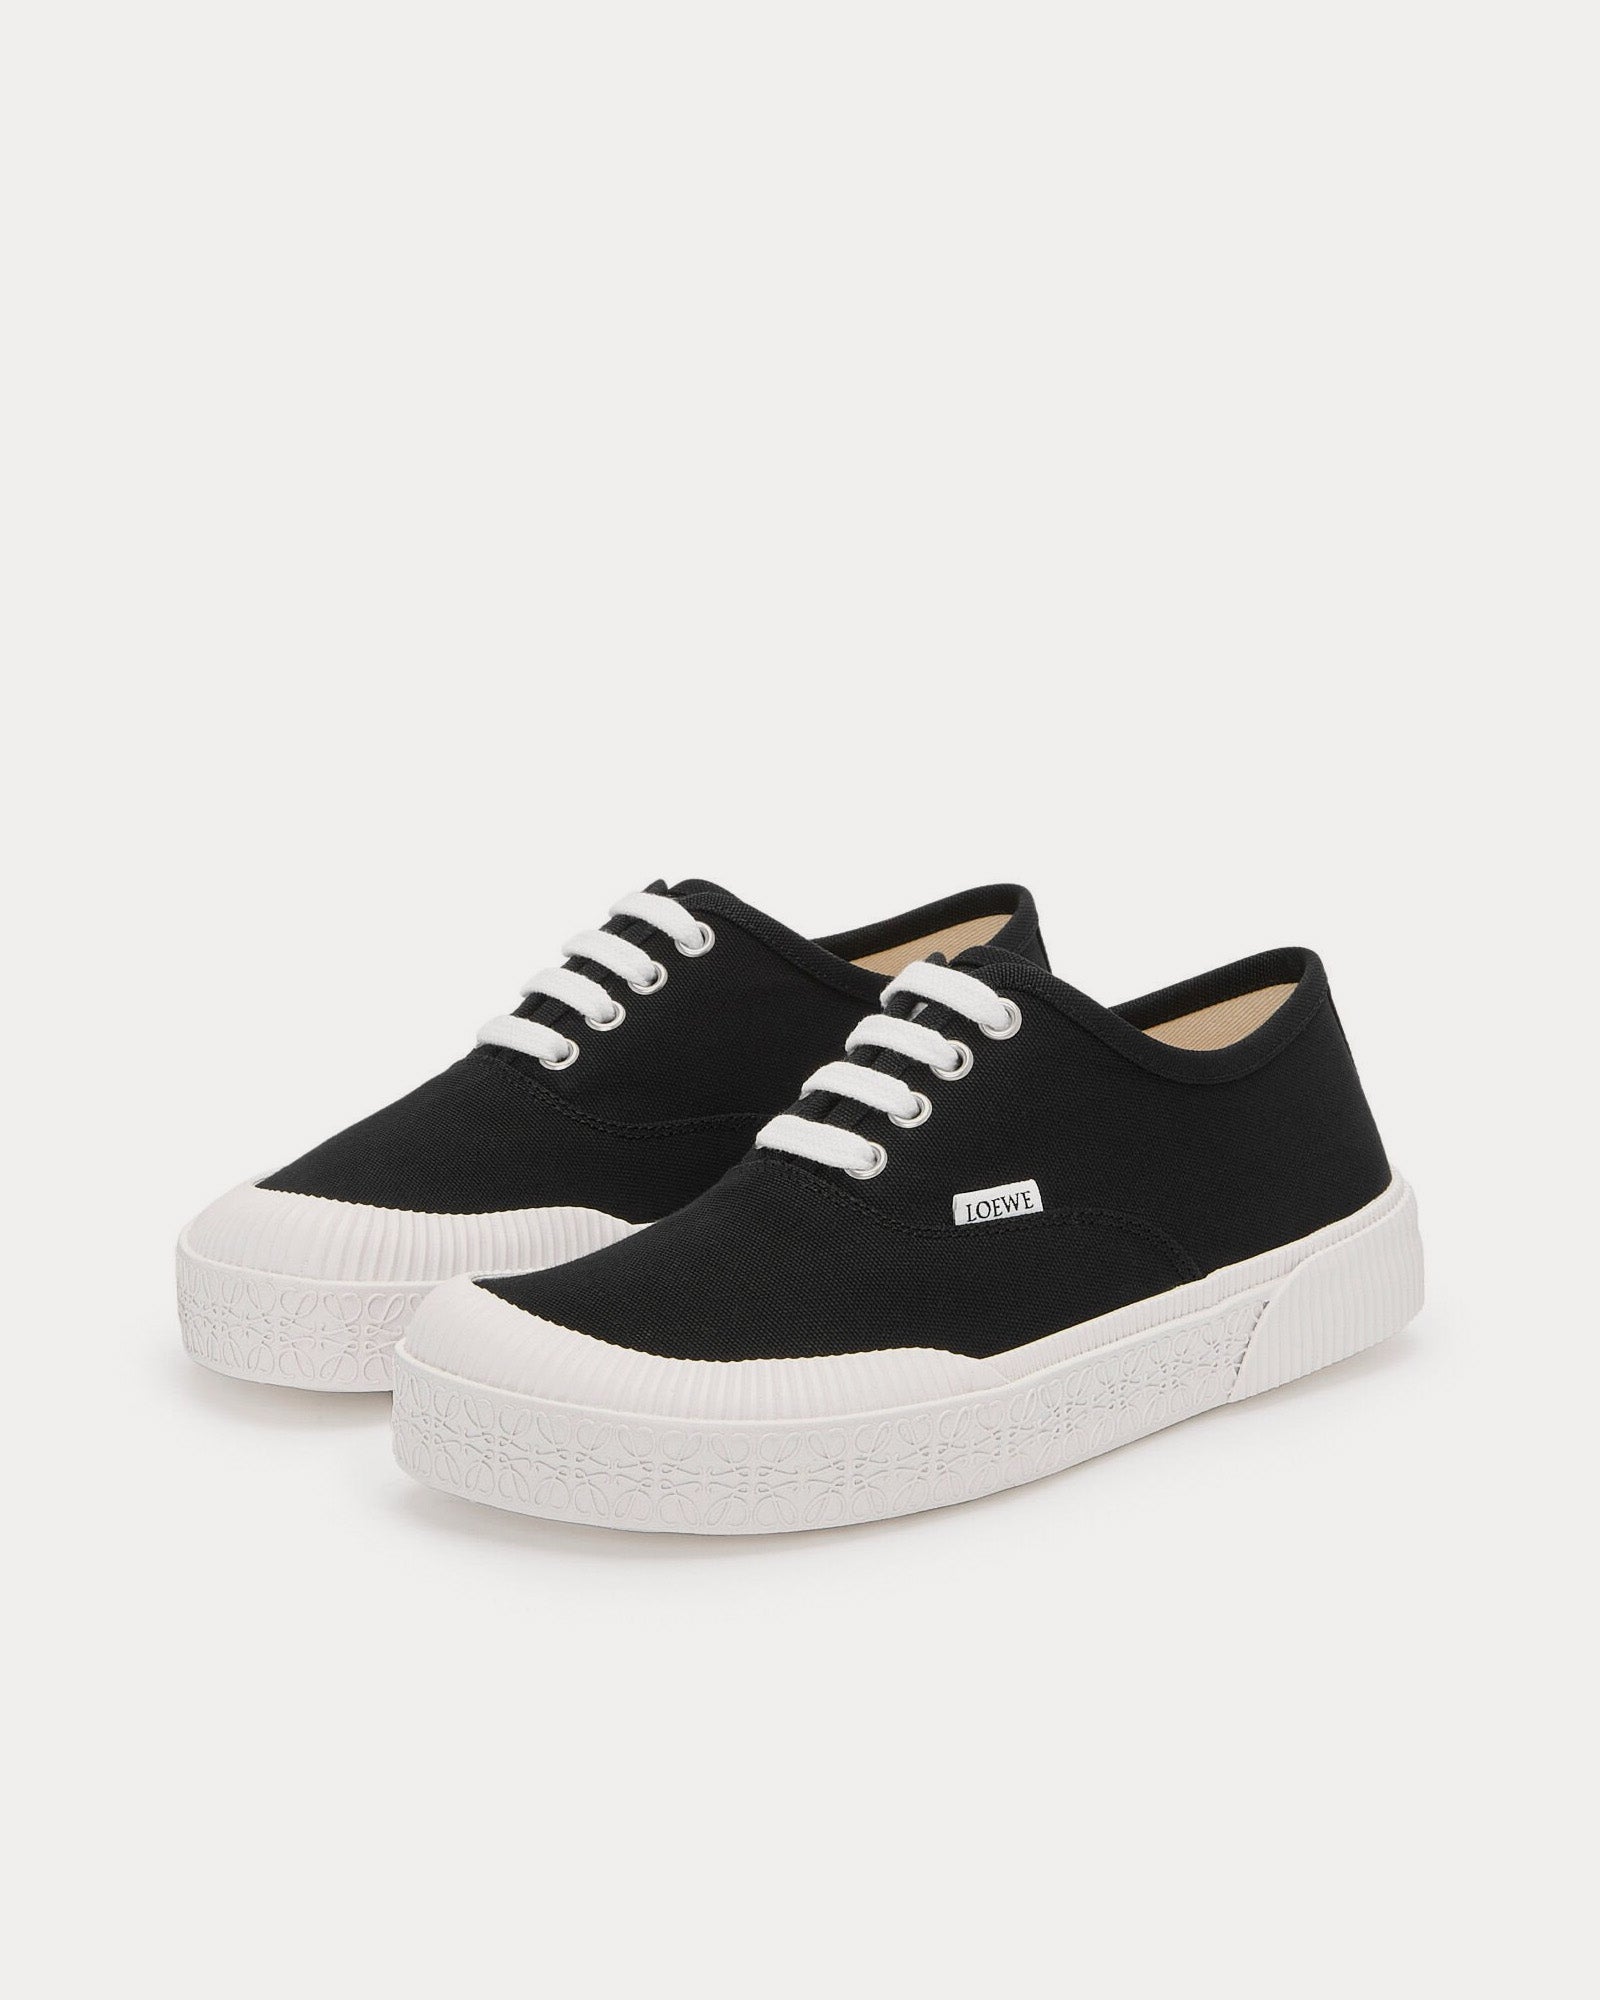 Loewe - Terra Vulca Canvas Black / White Low Top Sneakers